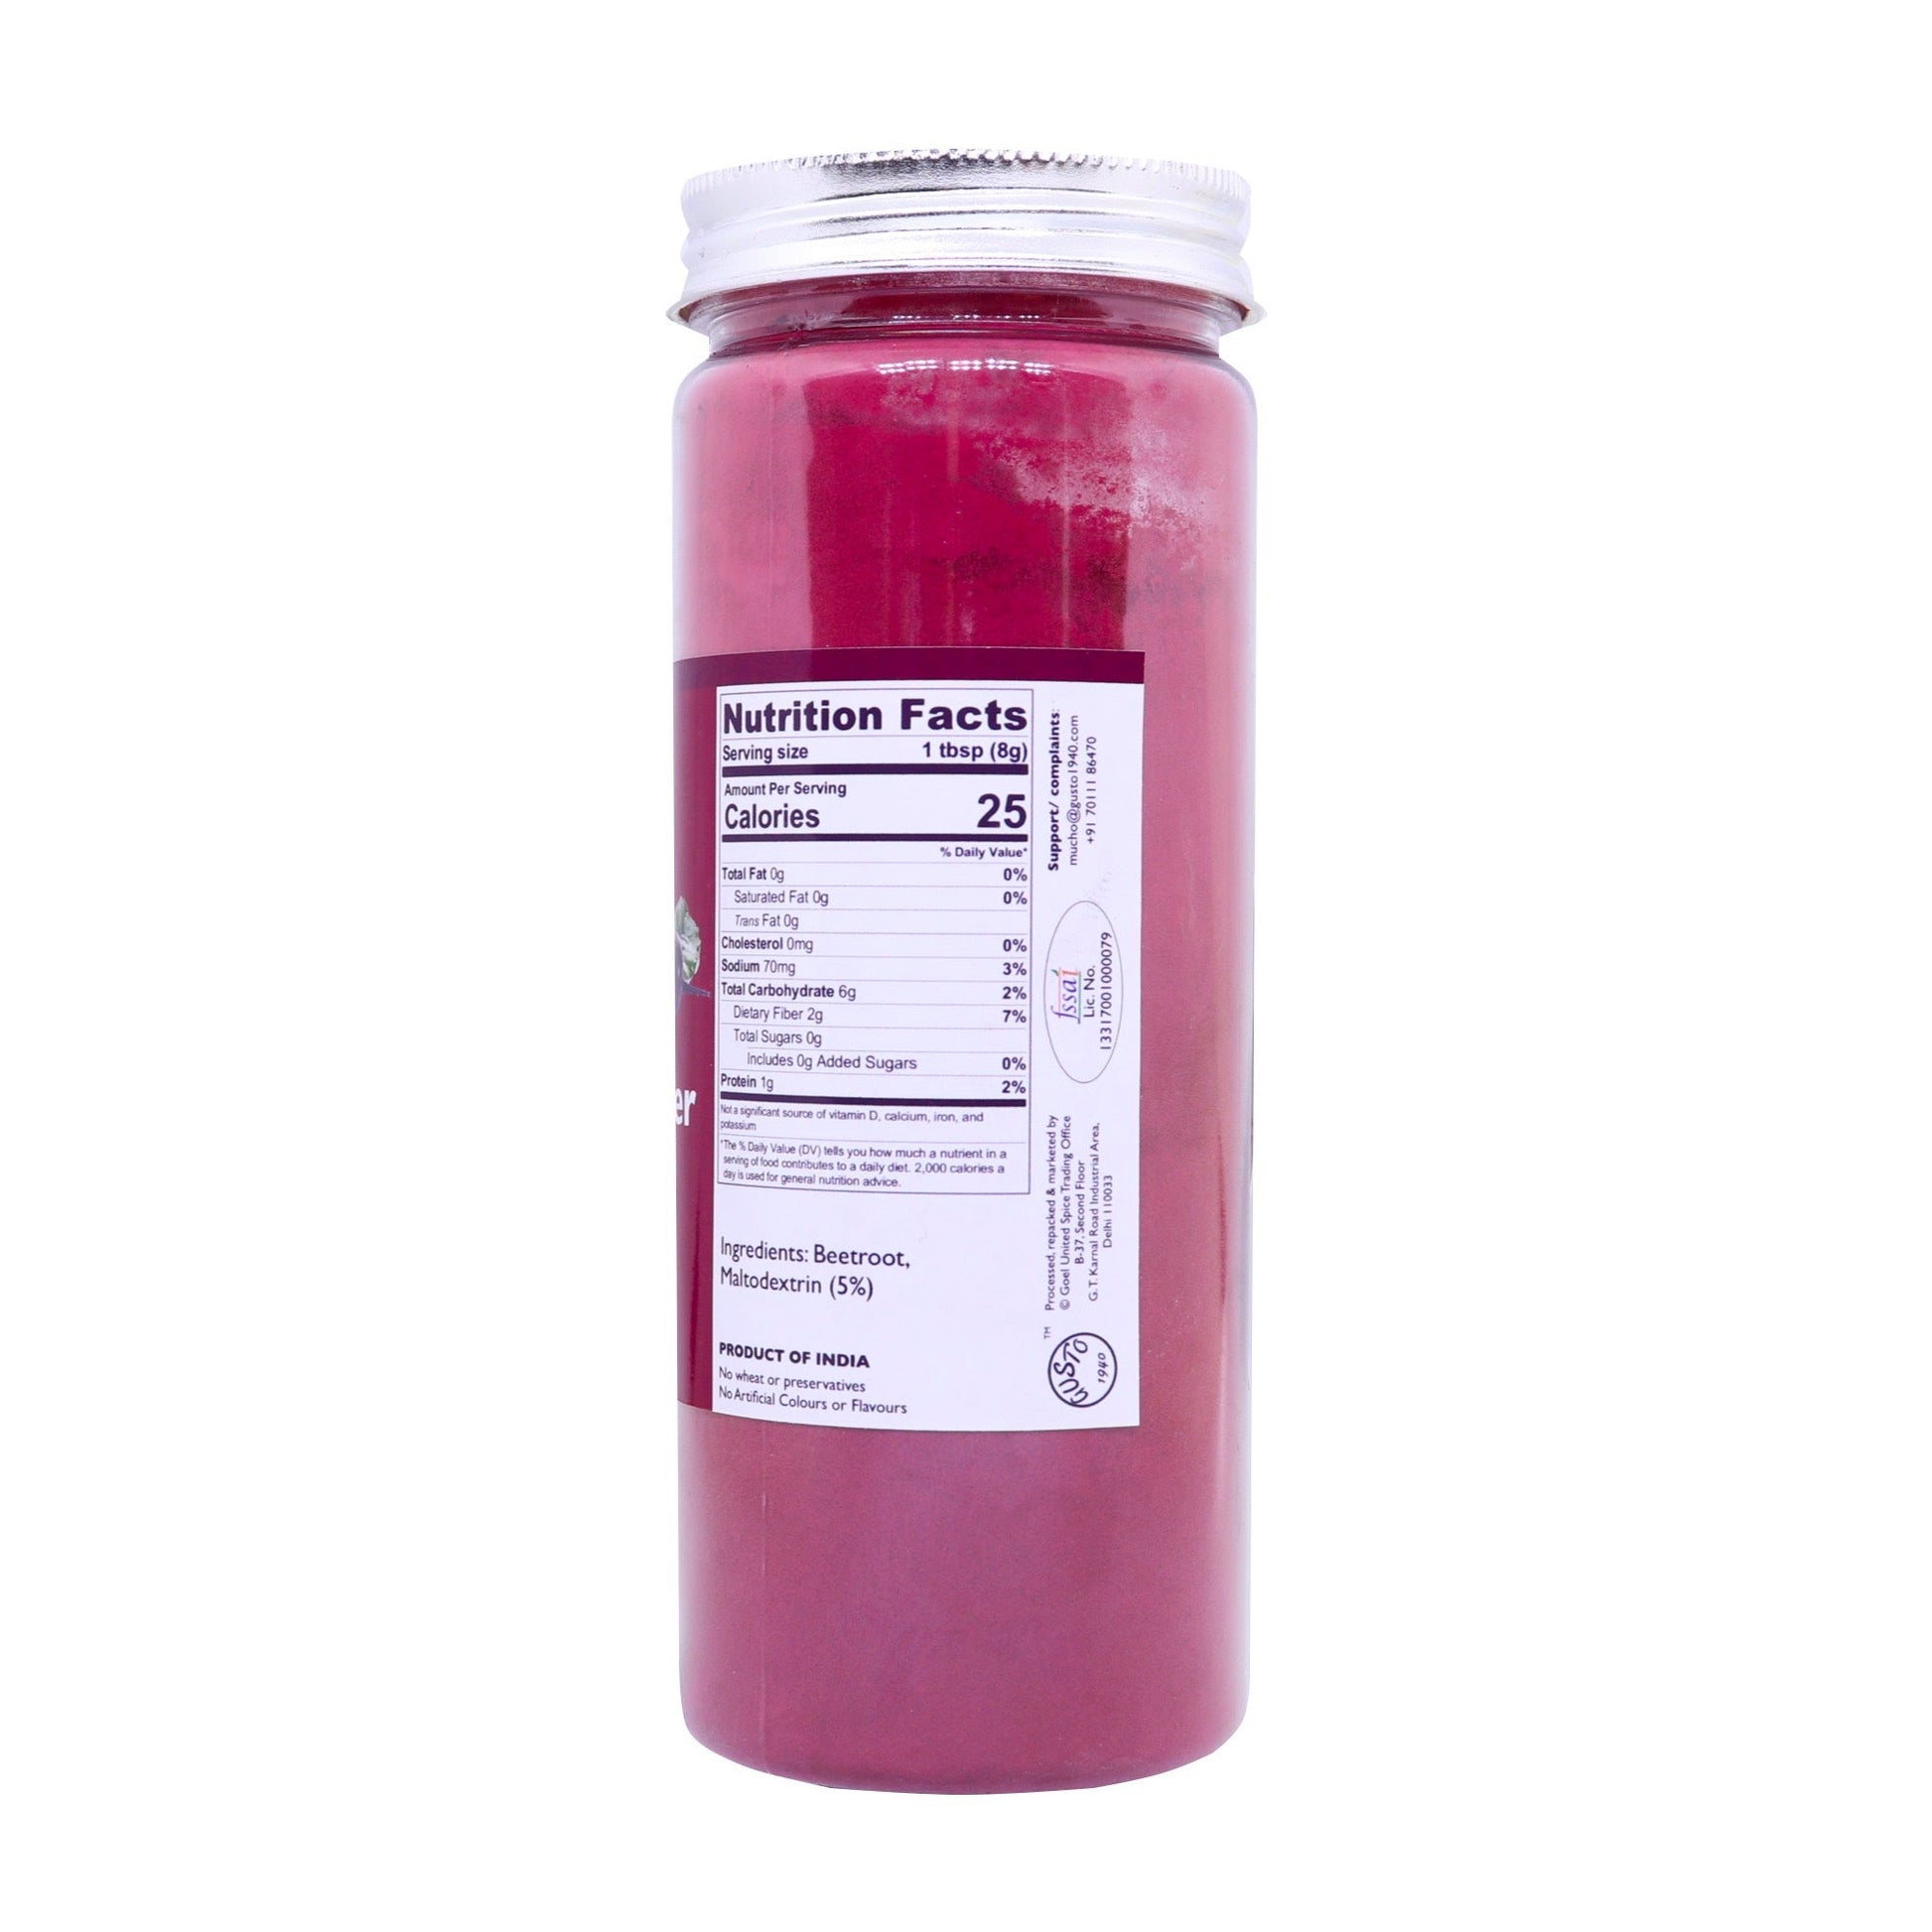 Beetroot Powder 200g Bottle | Vegan & Natural - Tassyam Organics